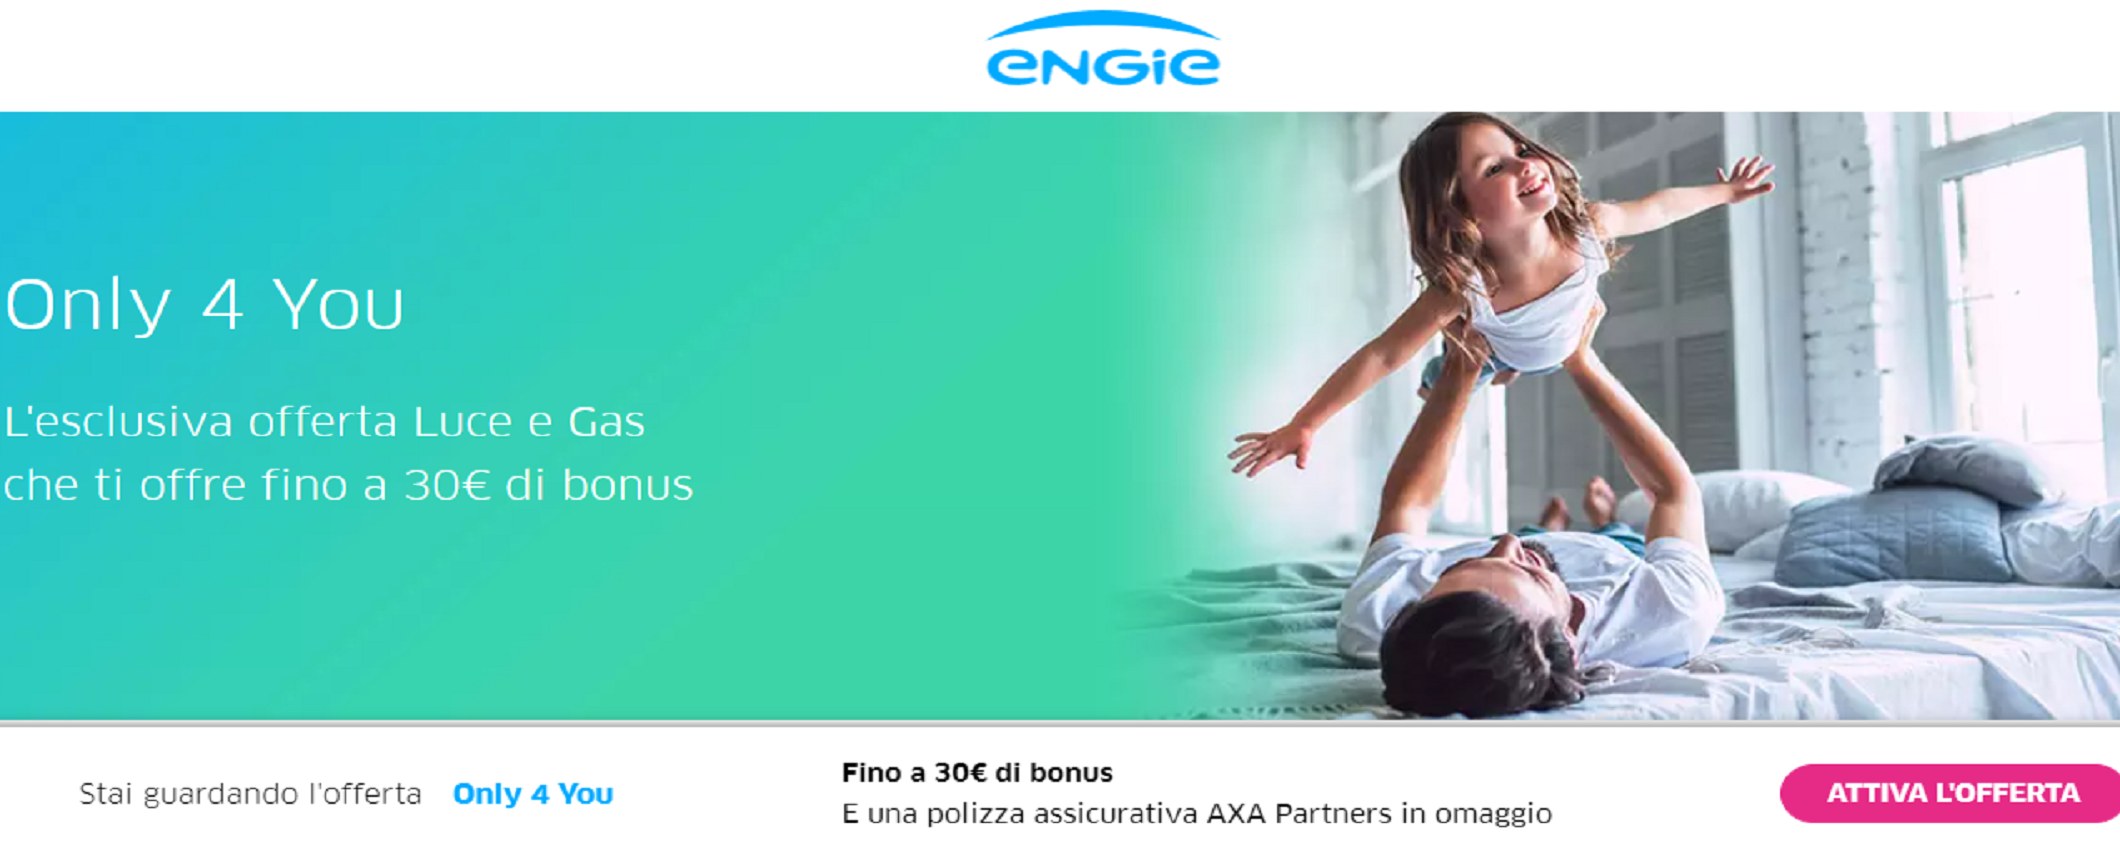 Engie offre 30 euro di bonus e prezzo bloccato!